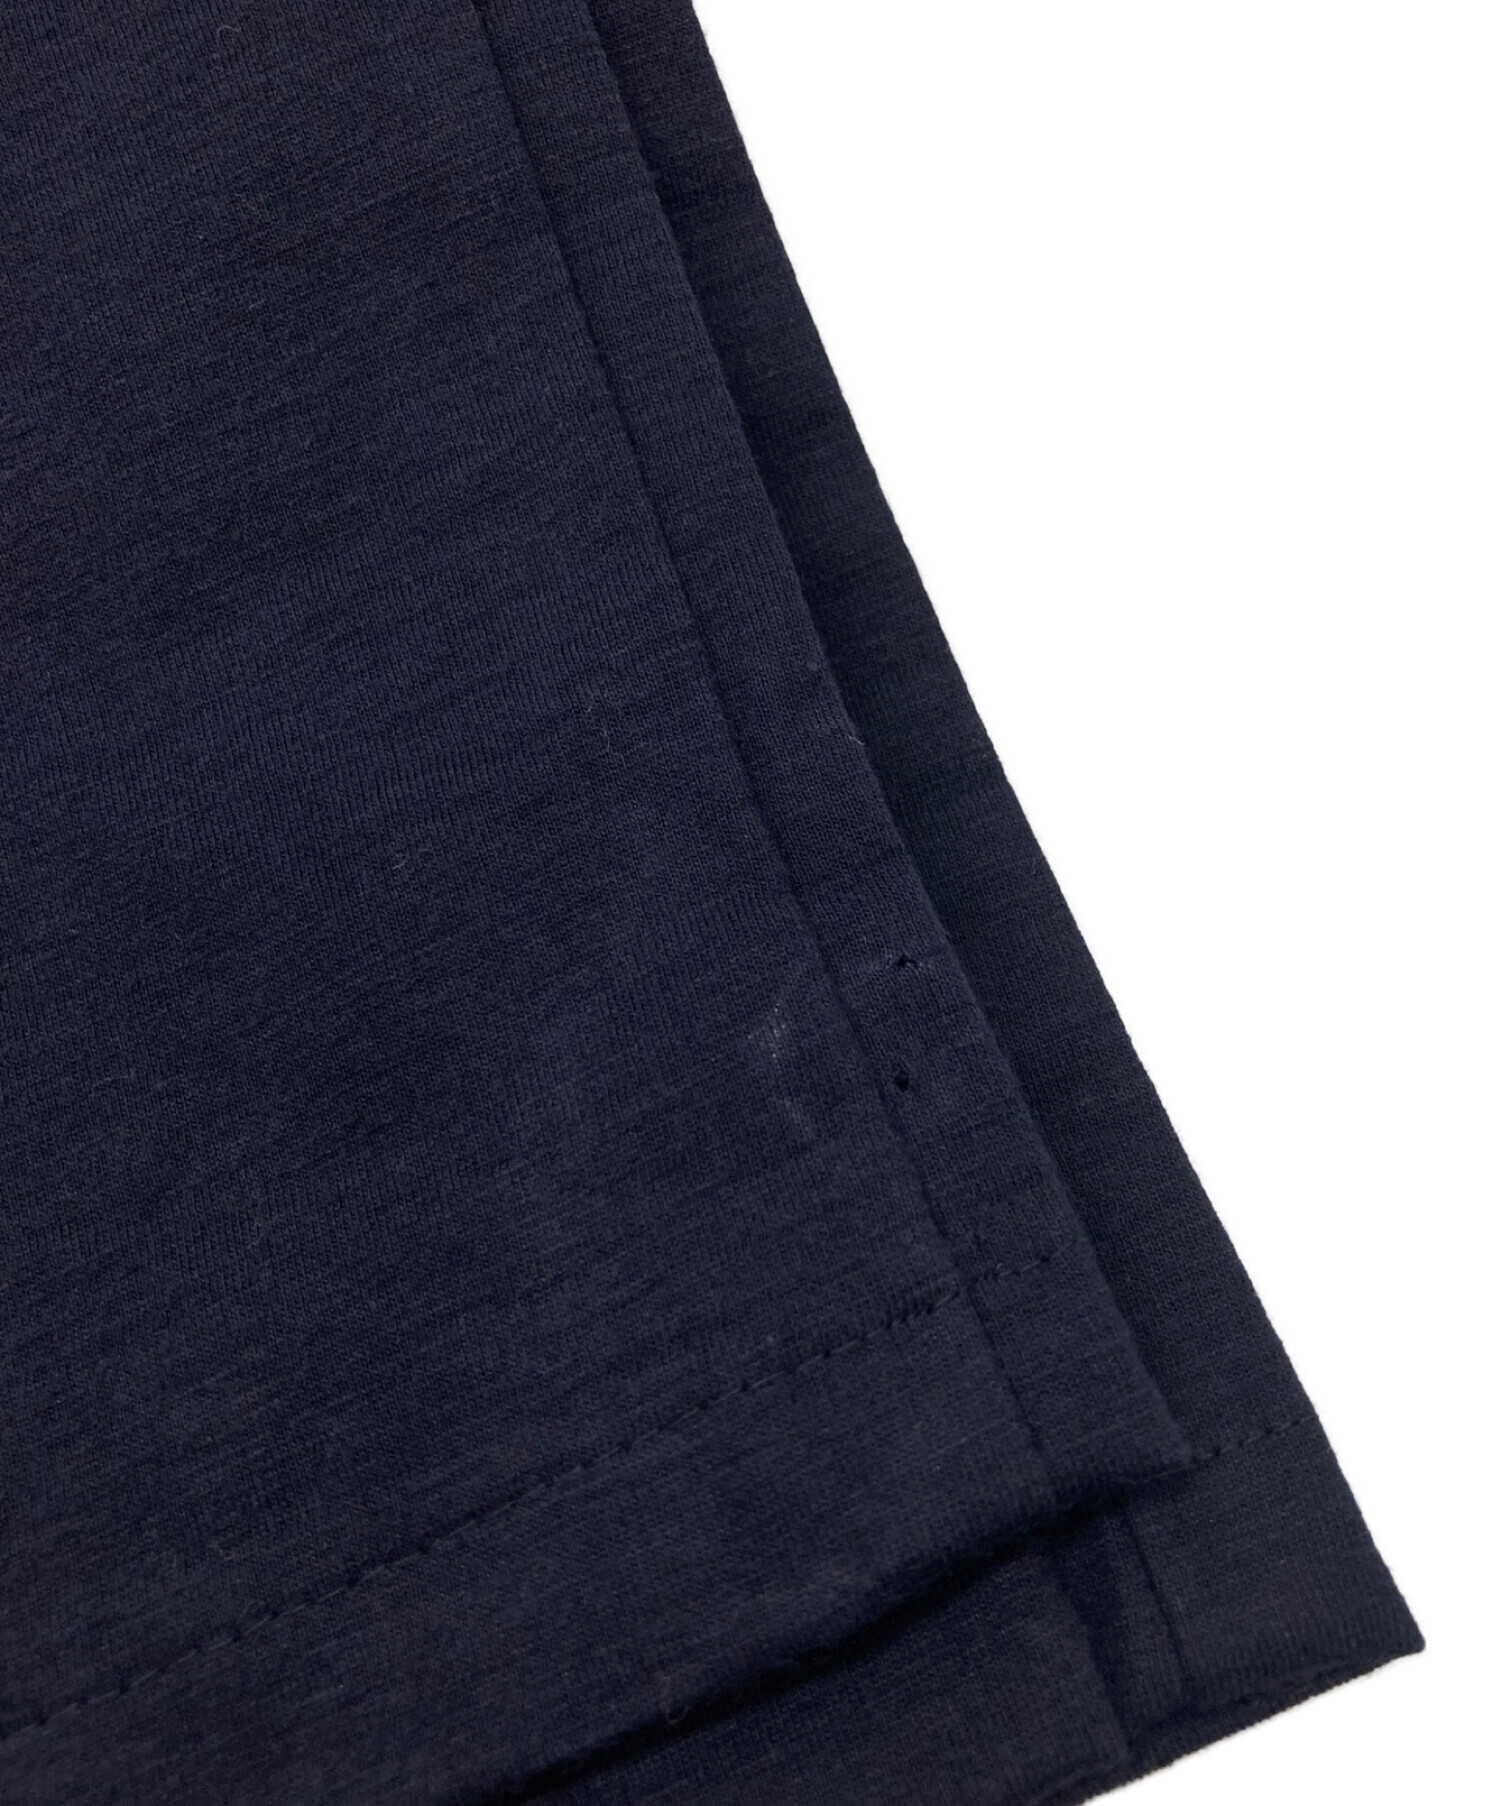 BLURHMS (ブラームス) SLANTING EASY TROUSER LIKE PAPER-CLOTH ネイビー サイズ:3